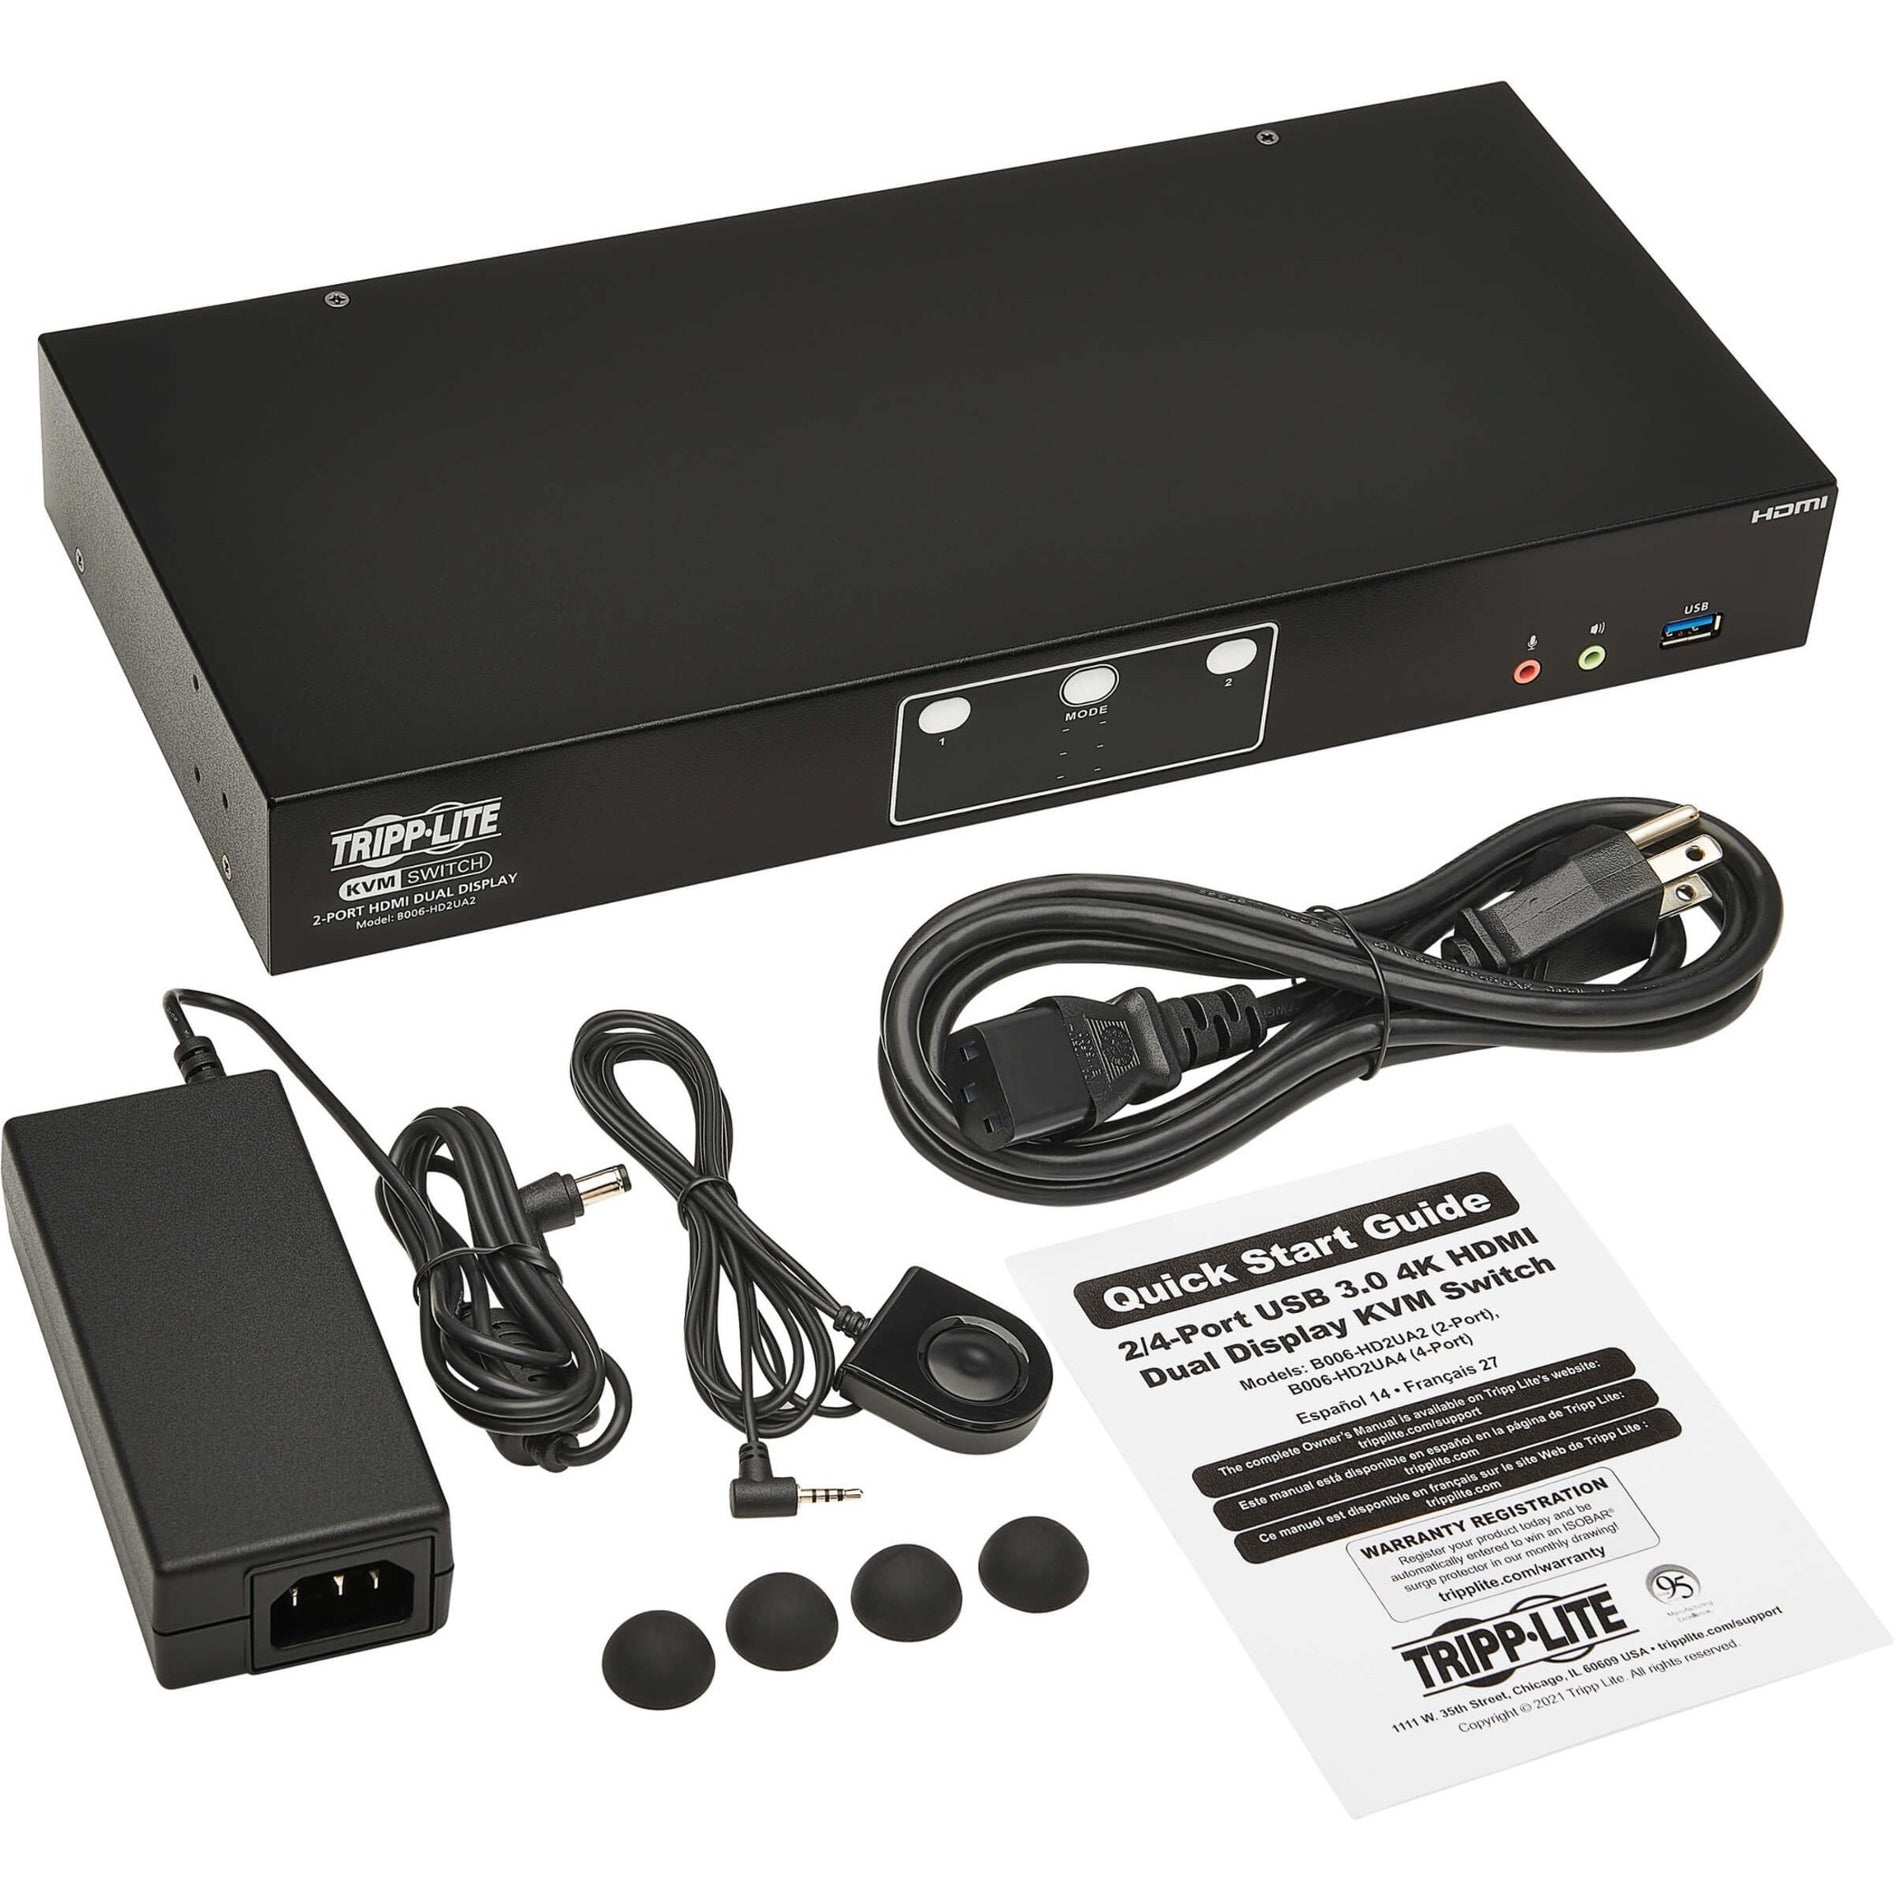 Tripp Lite B006-HD2UA2 HDMI Dual-Display KVM Switch, 4096 x 2160, 3 Year Warranty, USB, HDMI, 6 USB Ports, 5 HDMI Ports, 1 Network (RJ-45) Port